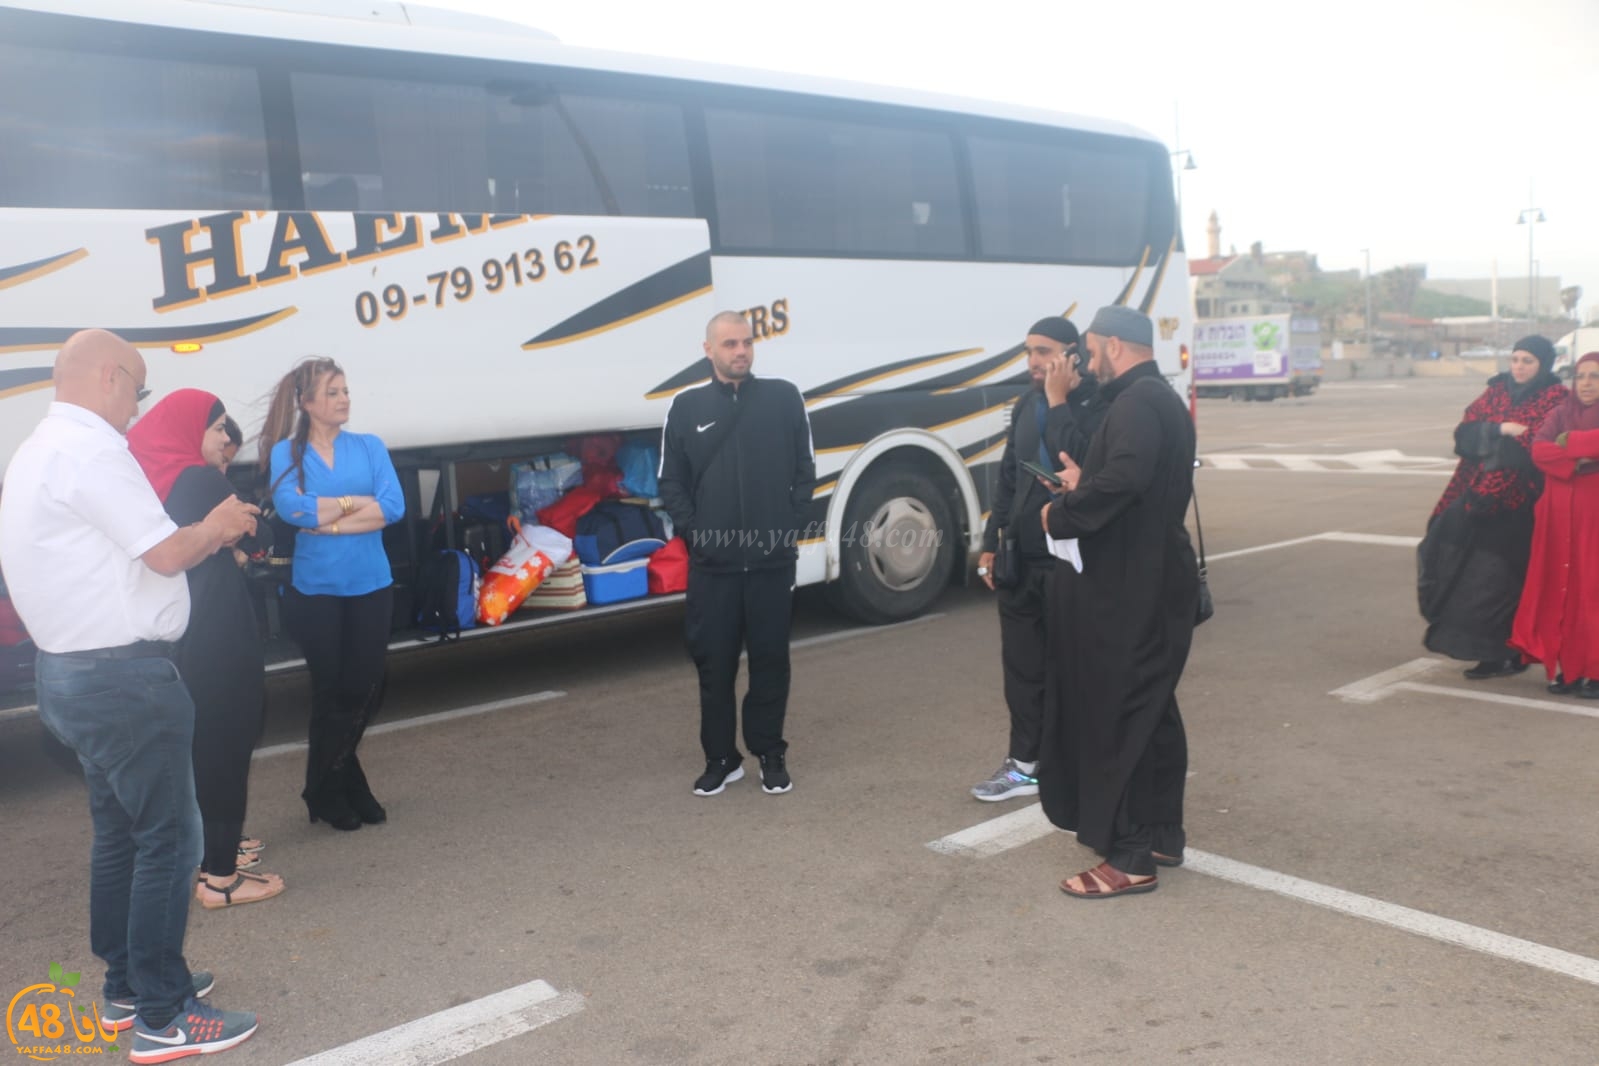  بالصور: انطلاق حافلة الفوج الرابع من معتمري يافا إلى الديار الحجازية 